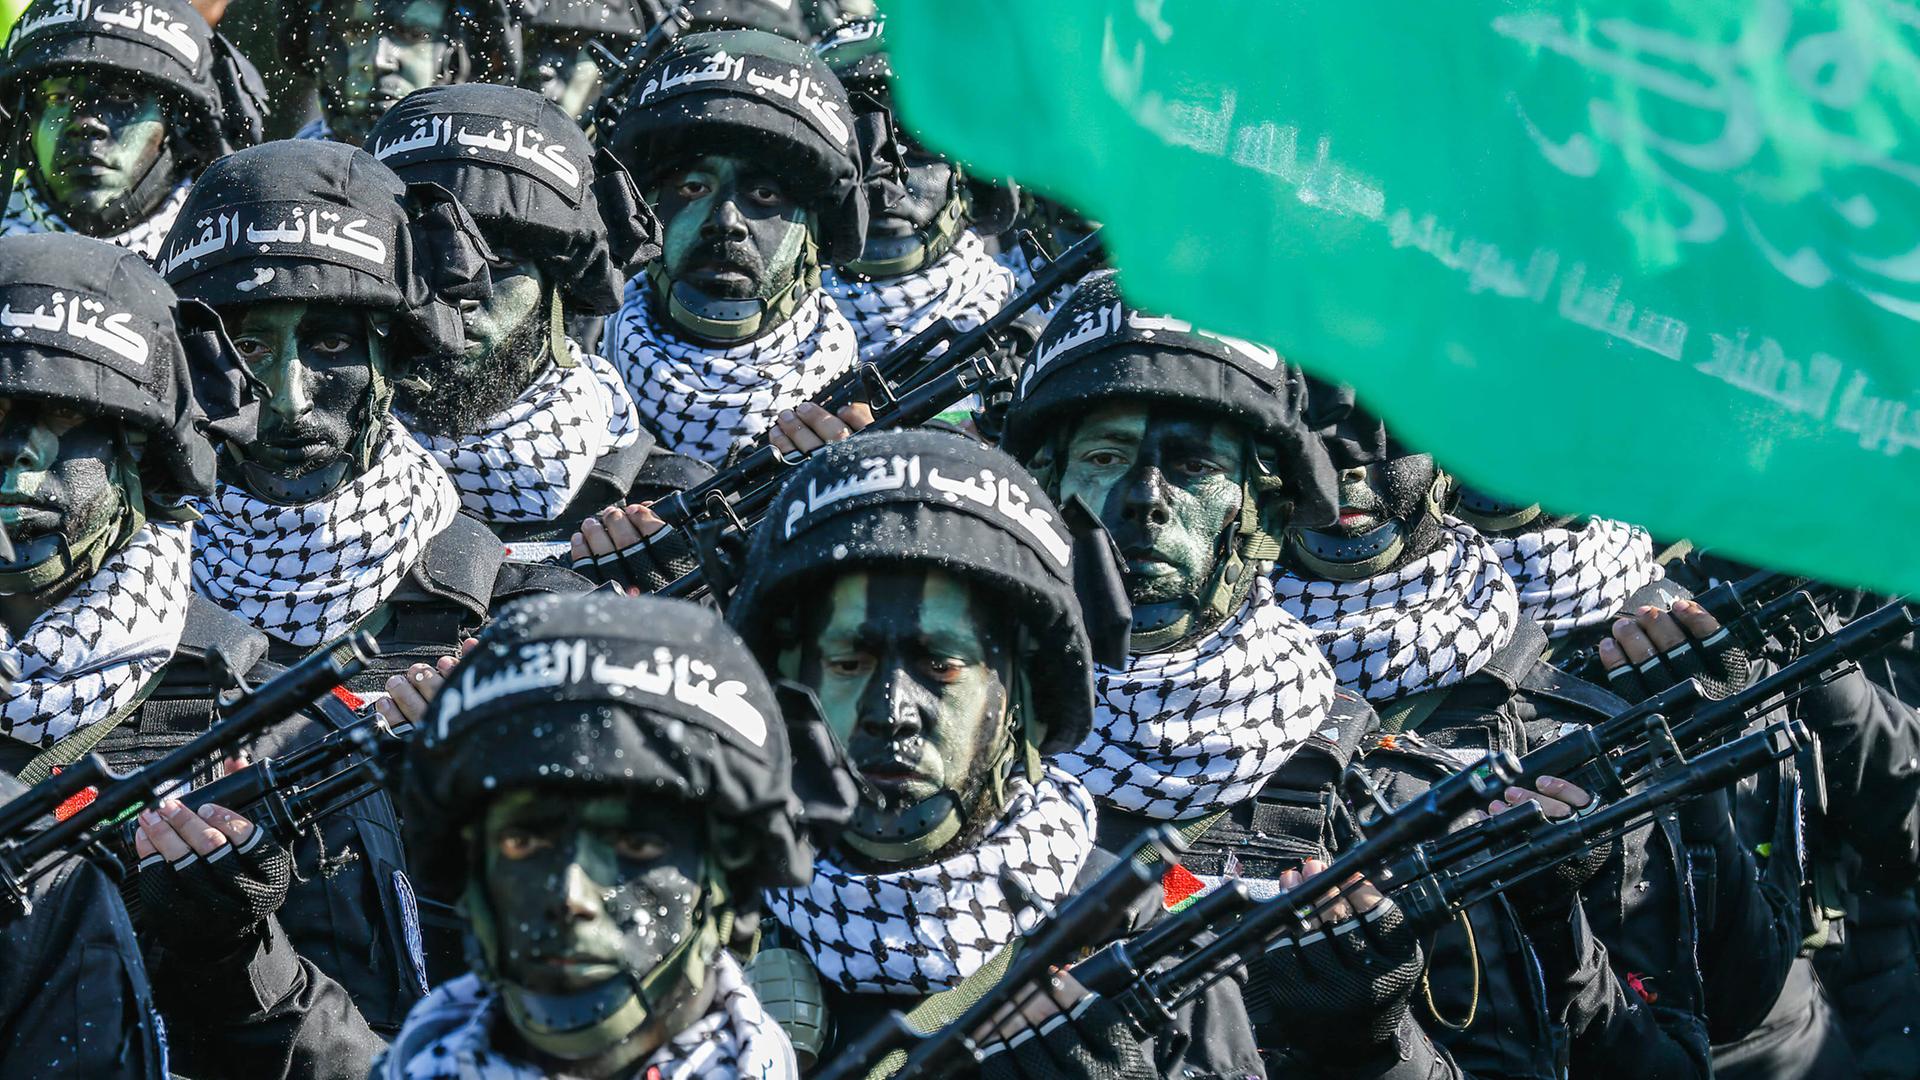 Archivbild: Kämpfer der Hamas stehen bei einer Parade geschminkt und mit Helm in einer Reihe.